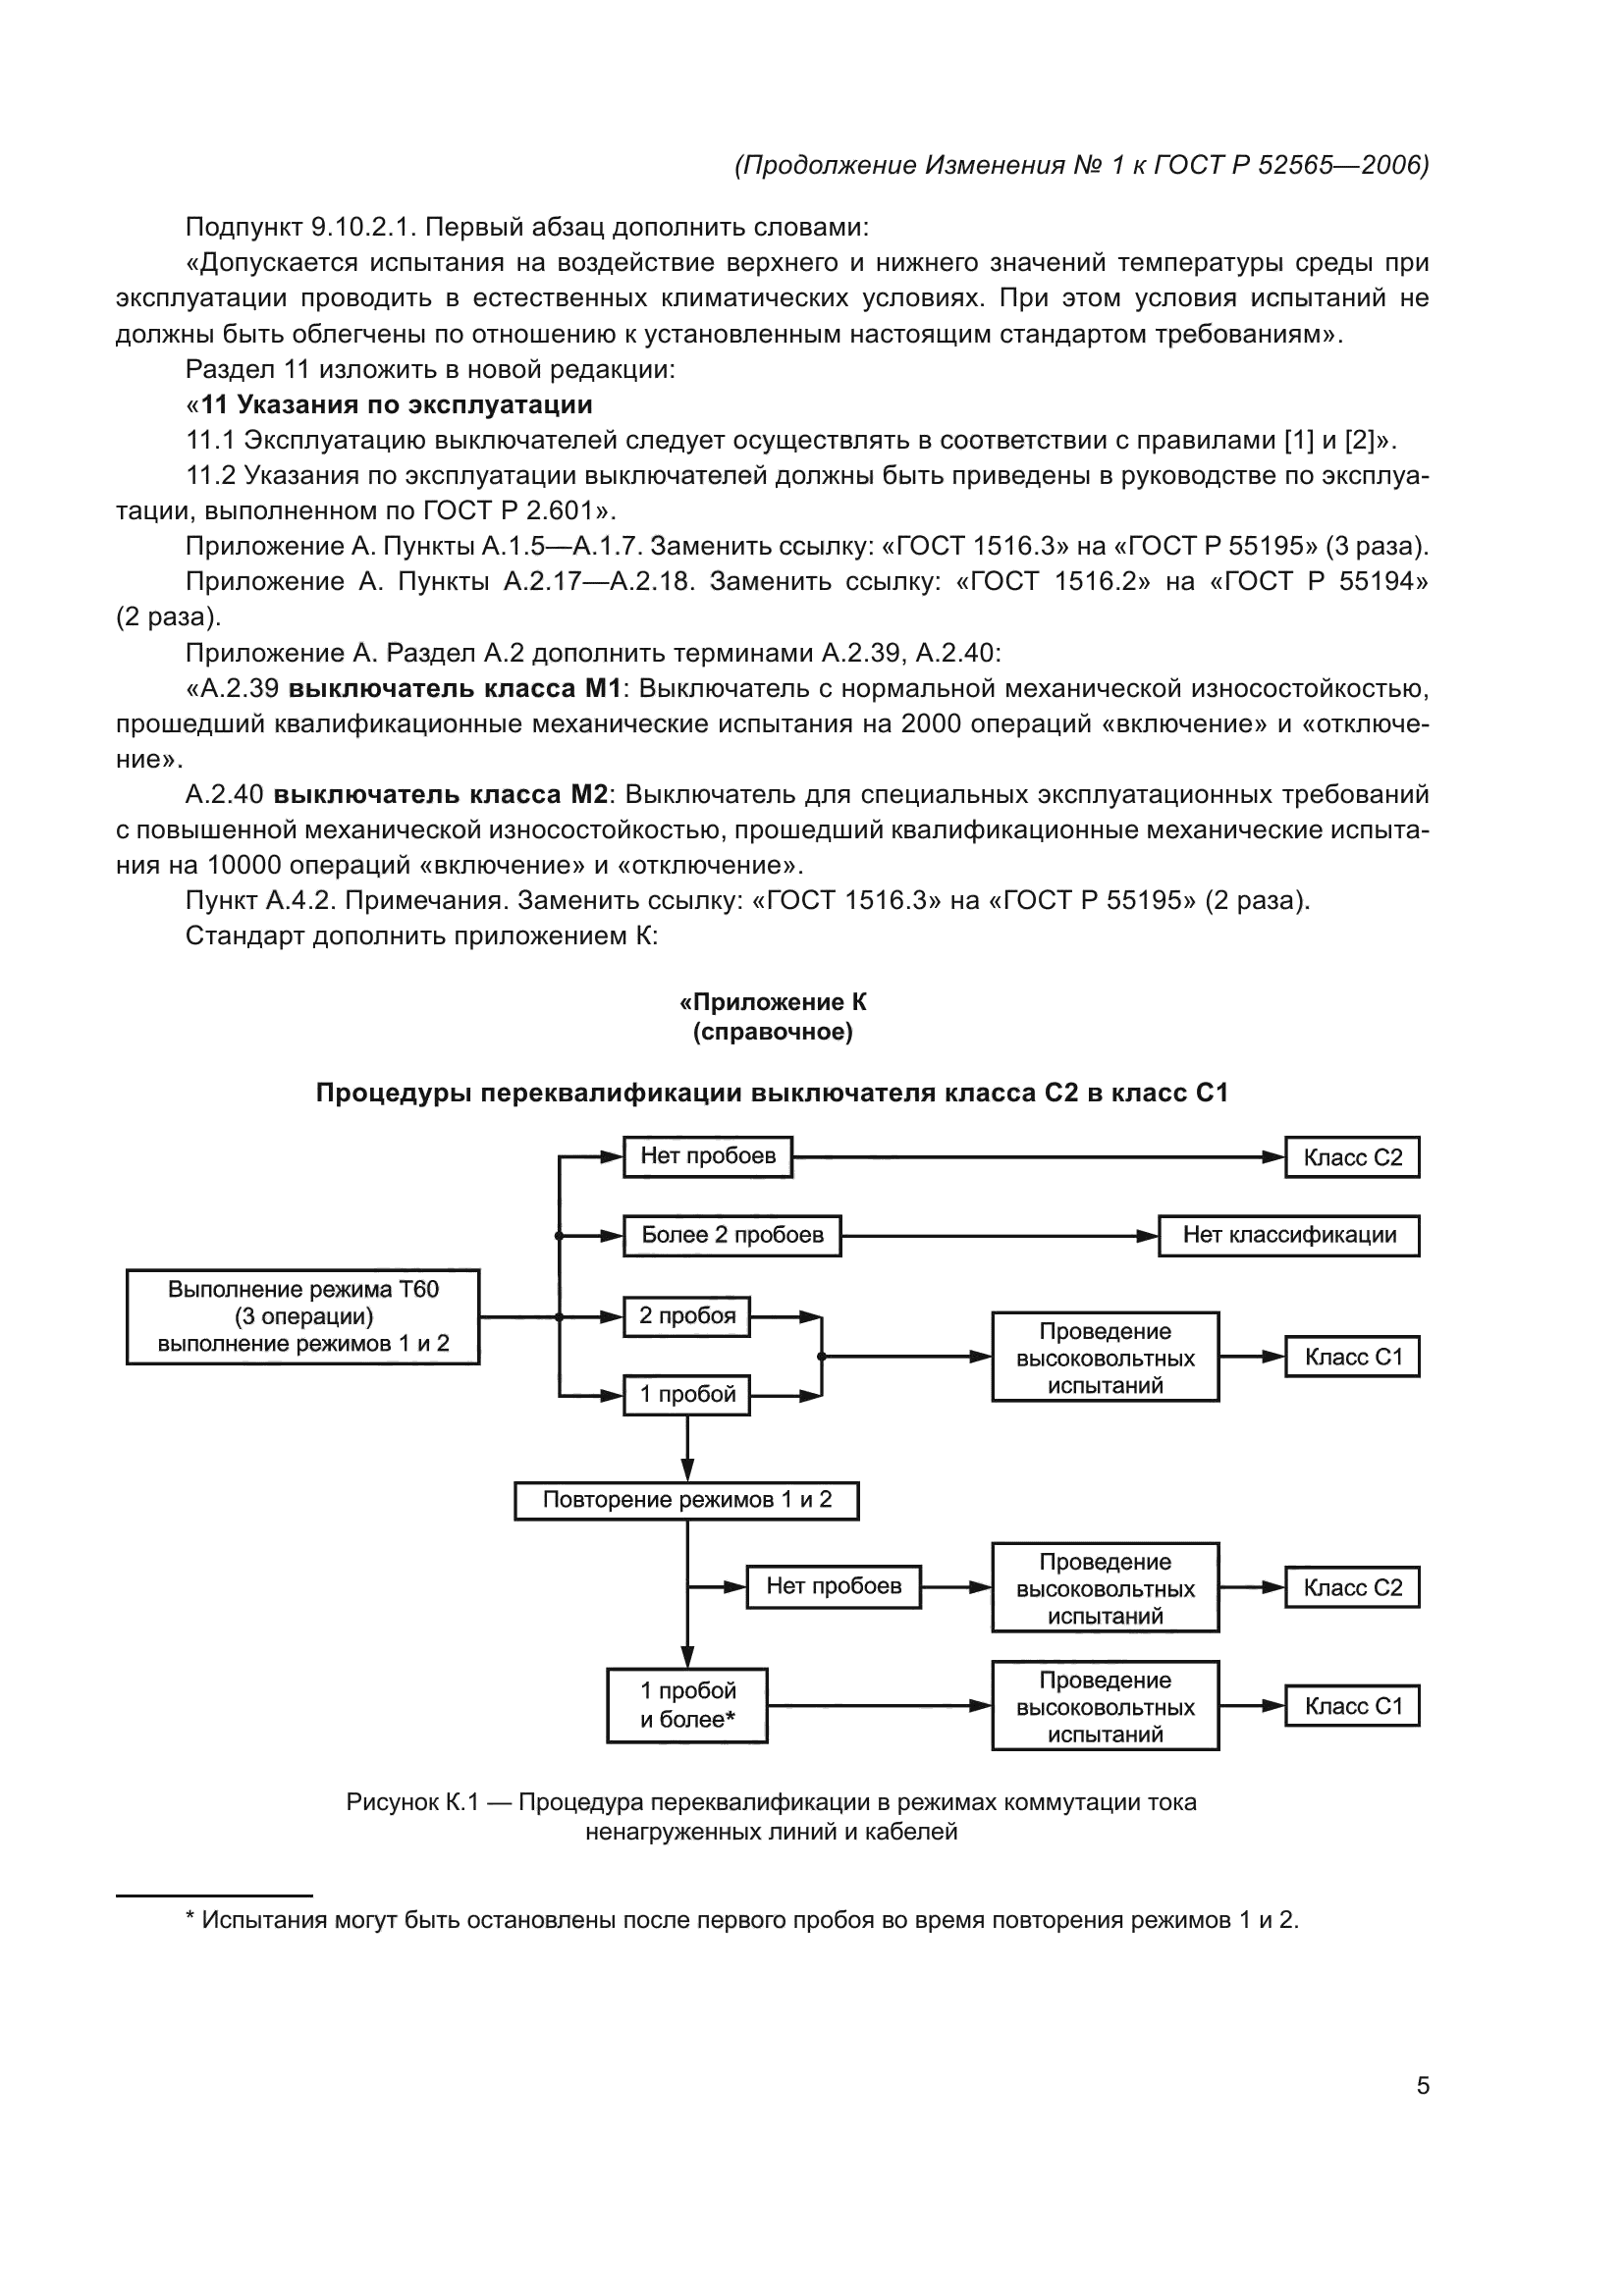 Изменение №1 к ГОСТ Р 52565-2006